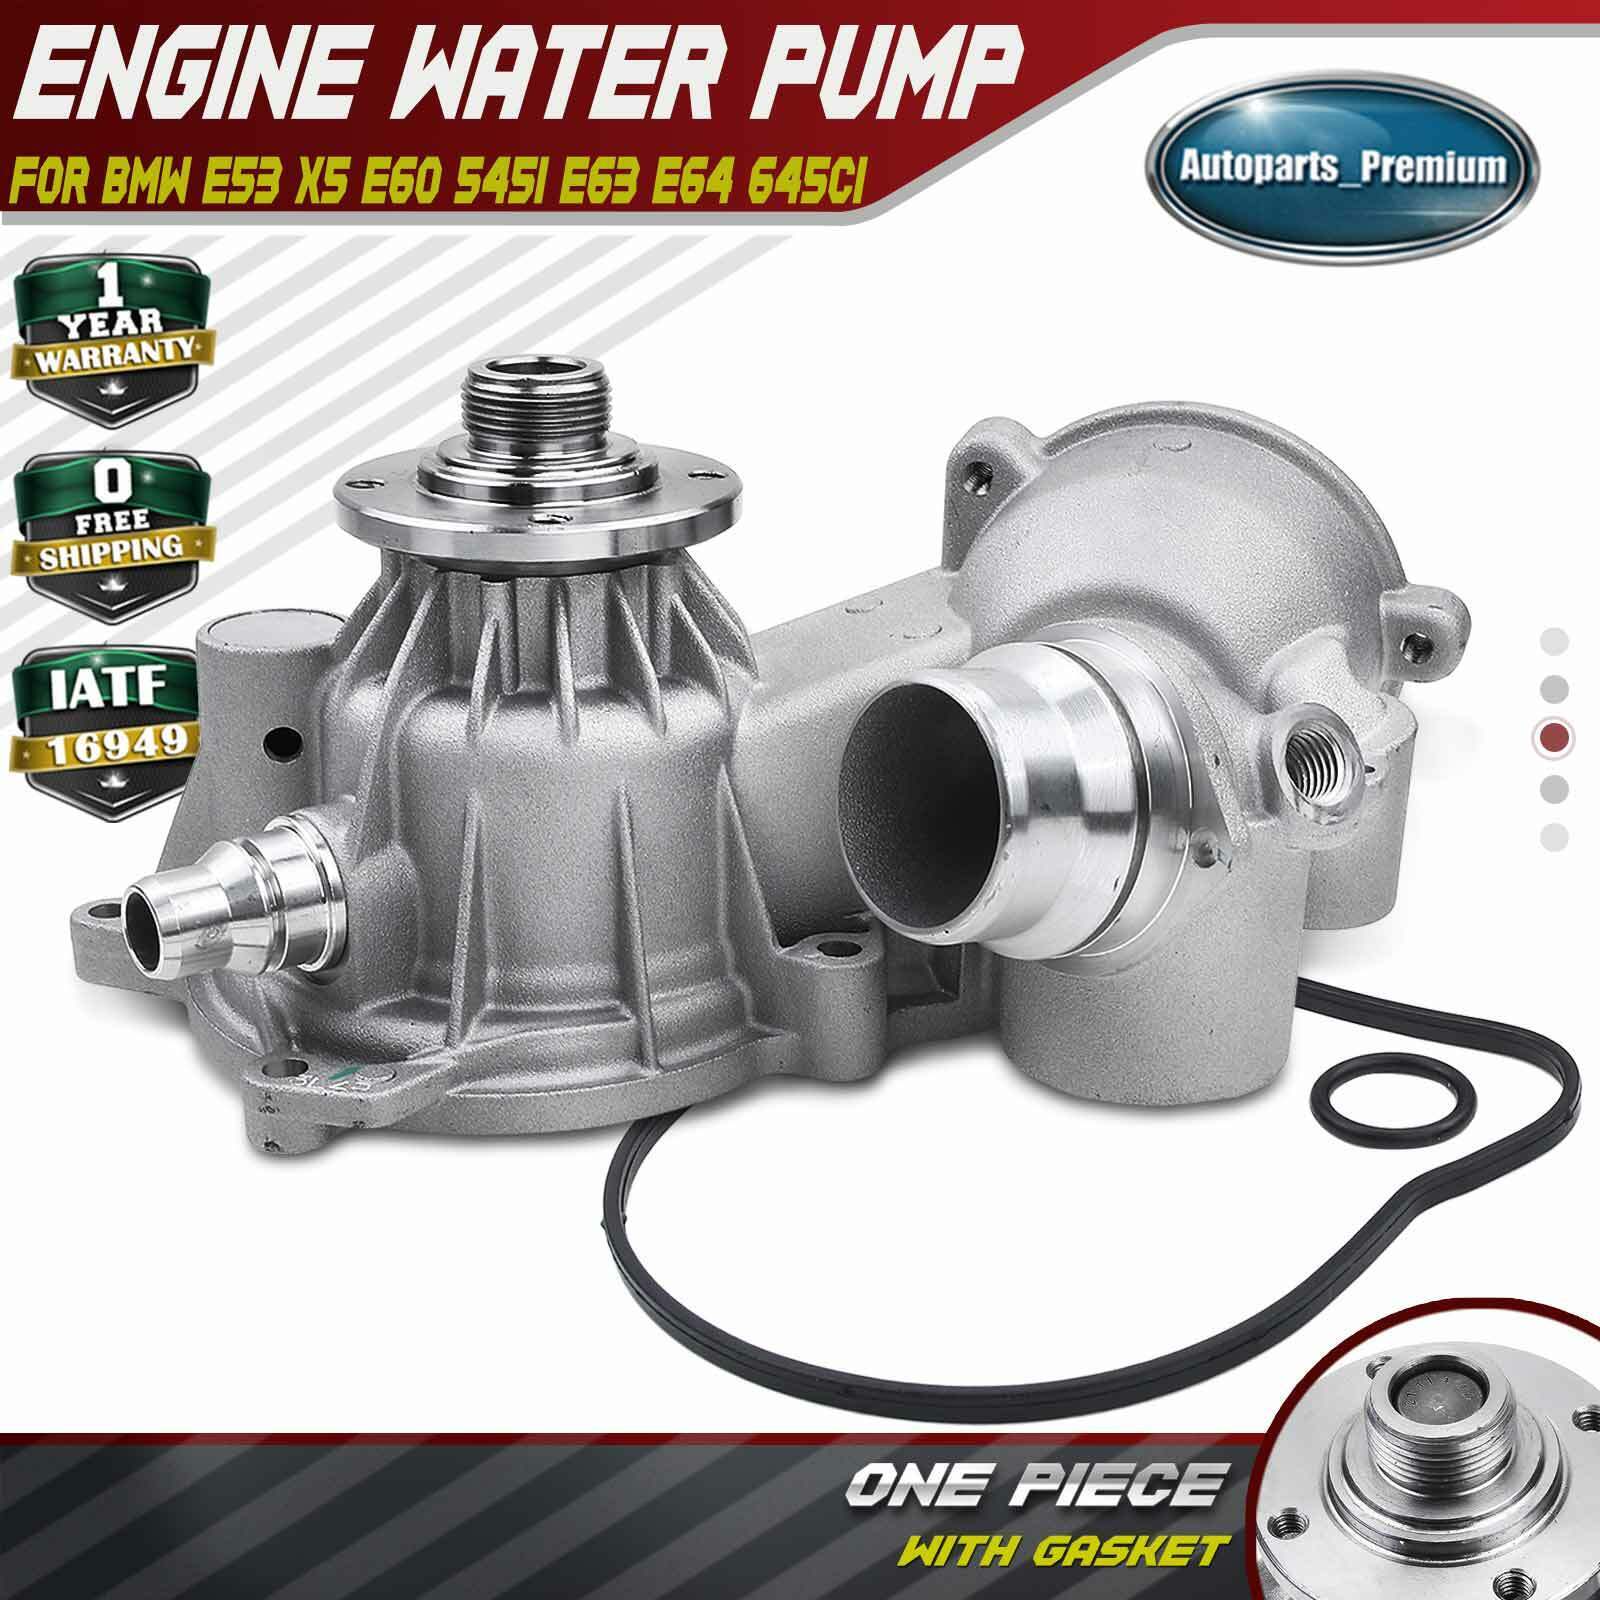 Engine Water Pump for BMW E53 X5 2004-2006 E60 545i E63 E64 645Ci V8 4.4L 4.8L